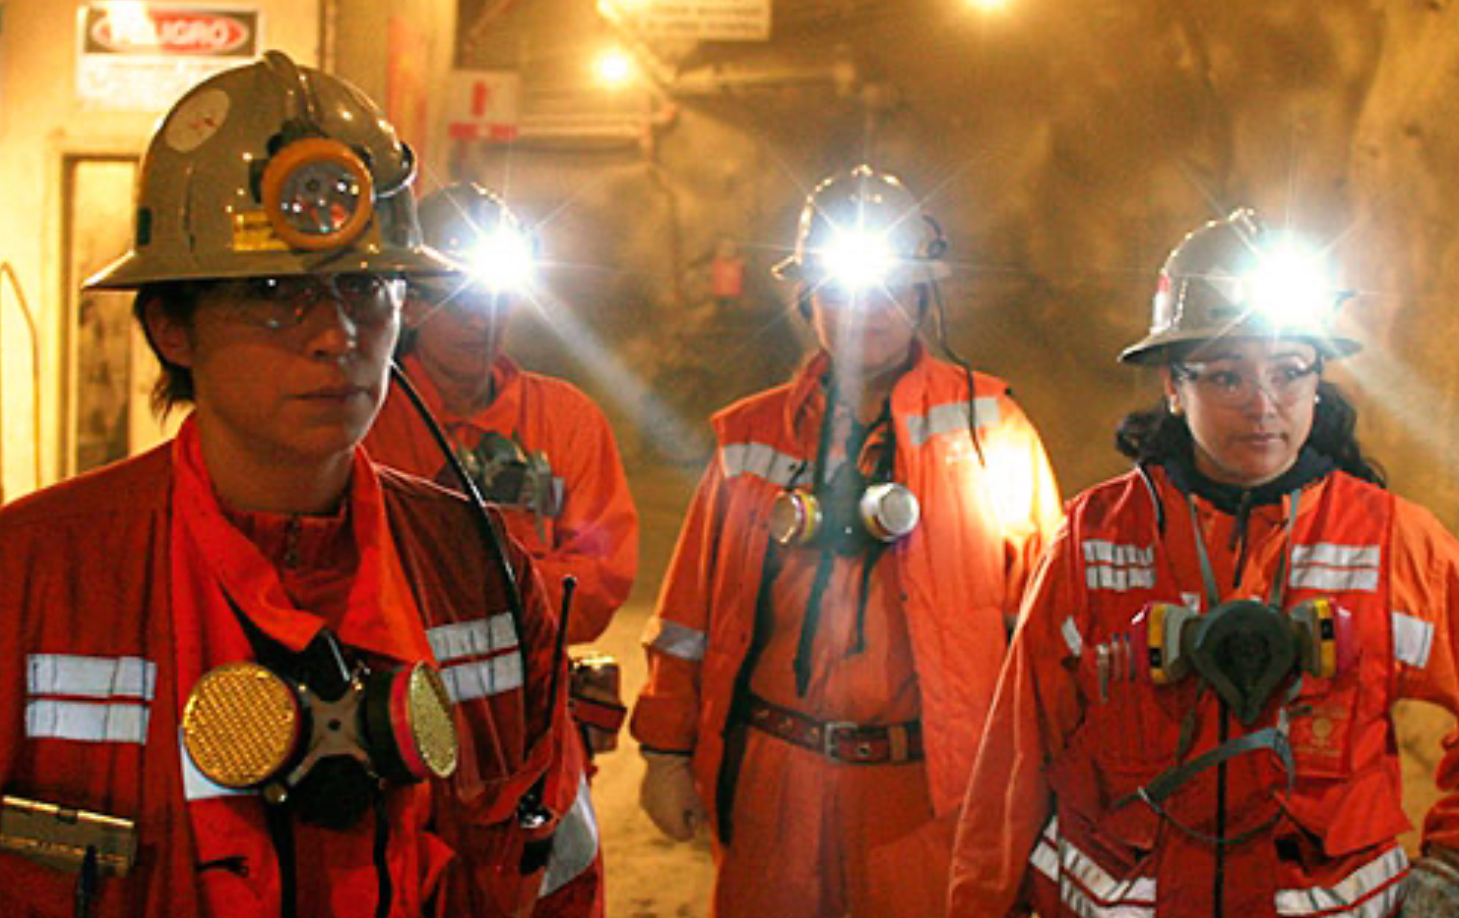 El senado de la Nación destacó la inclusión de las mujeres en la industria minera